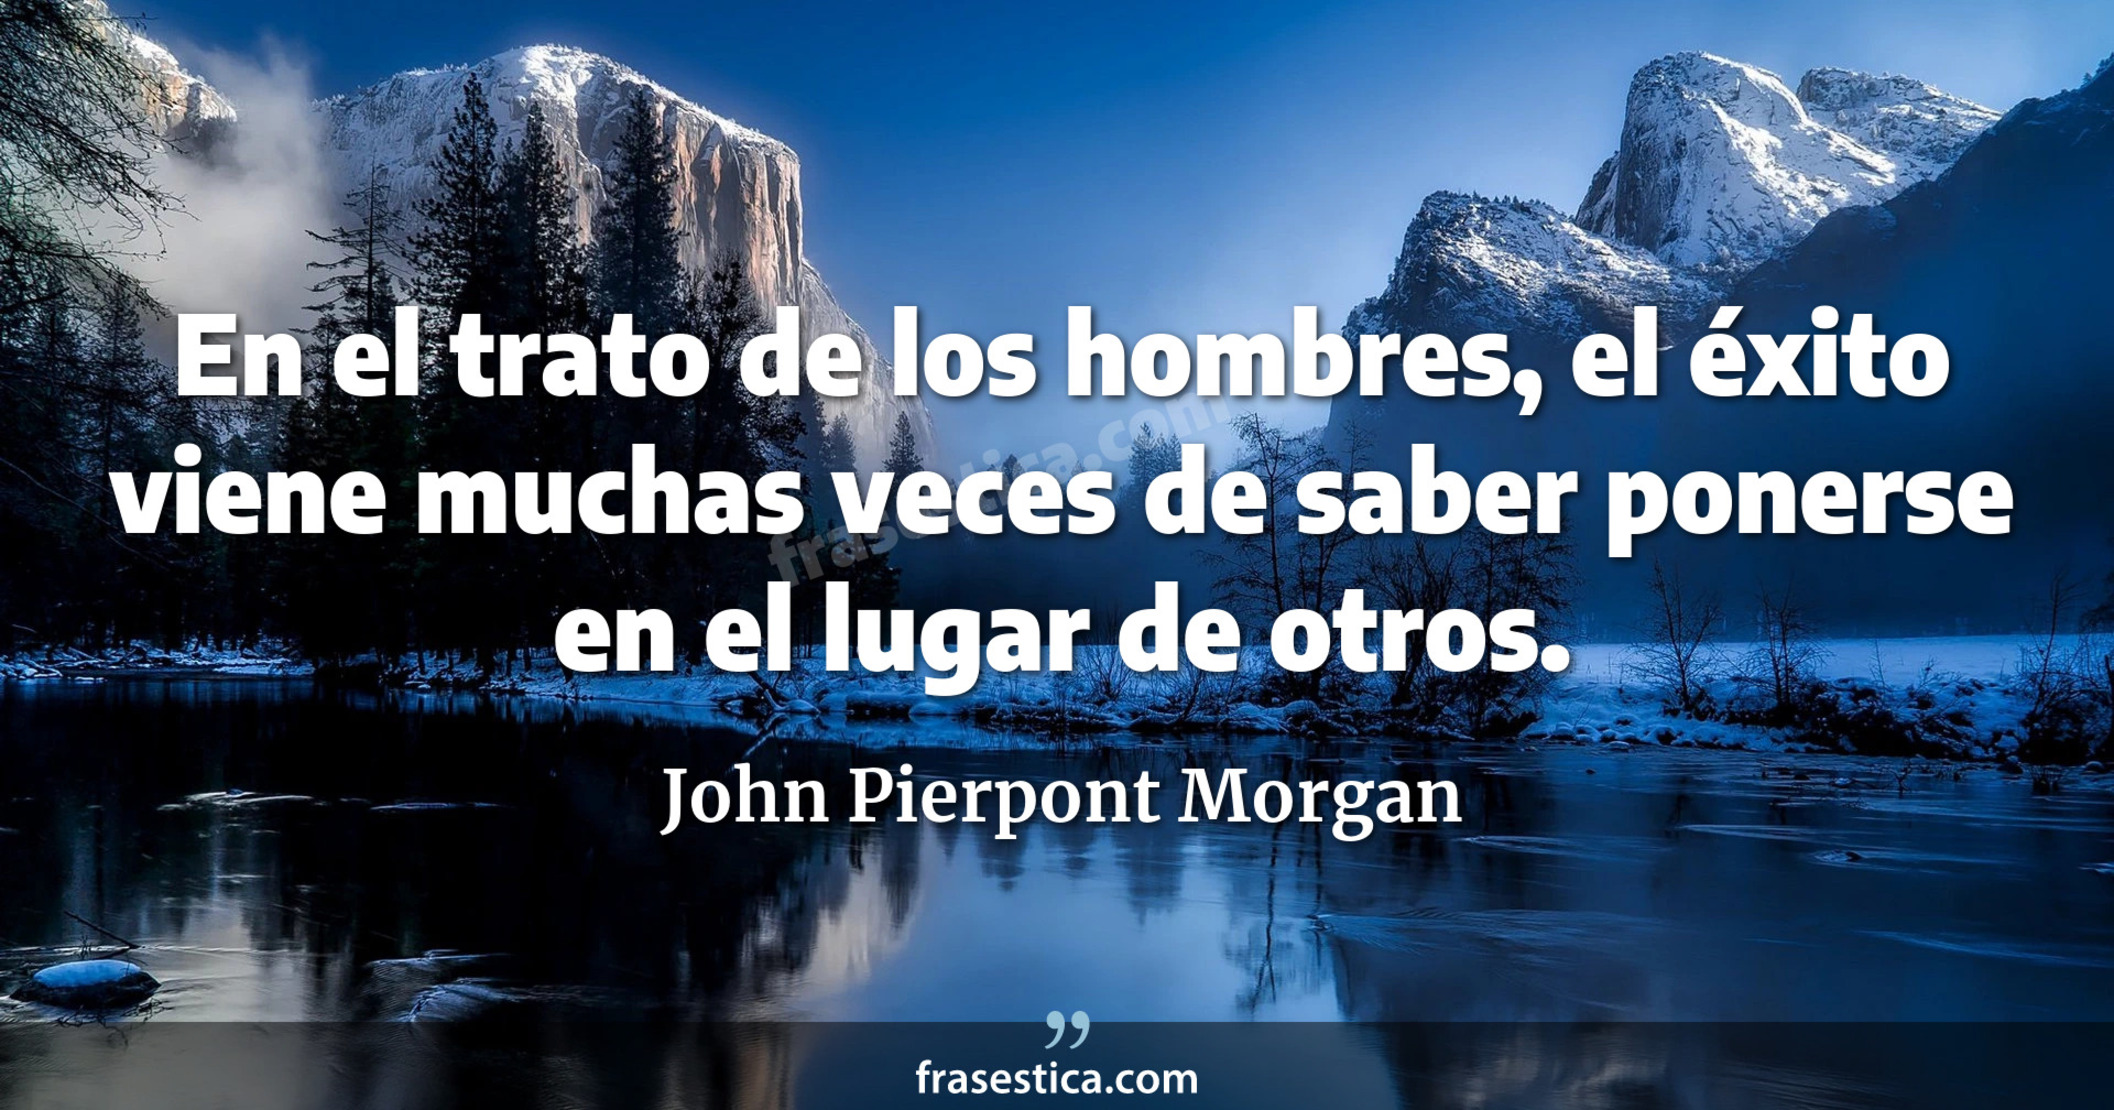 En el trato de los hombres, el éxito viene muchas veces de saber ponerse en el lugar de otros. - John Pierpont Morgan